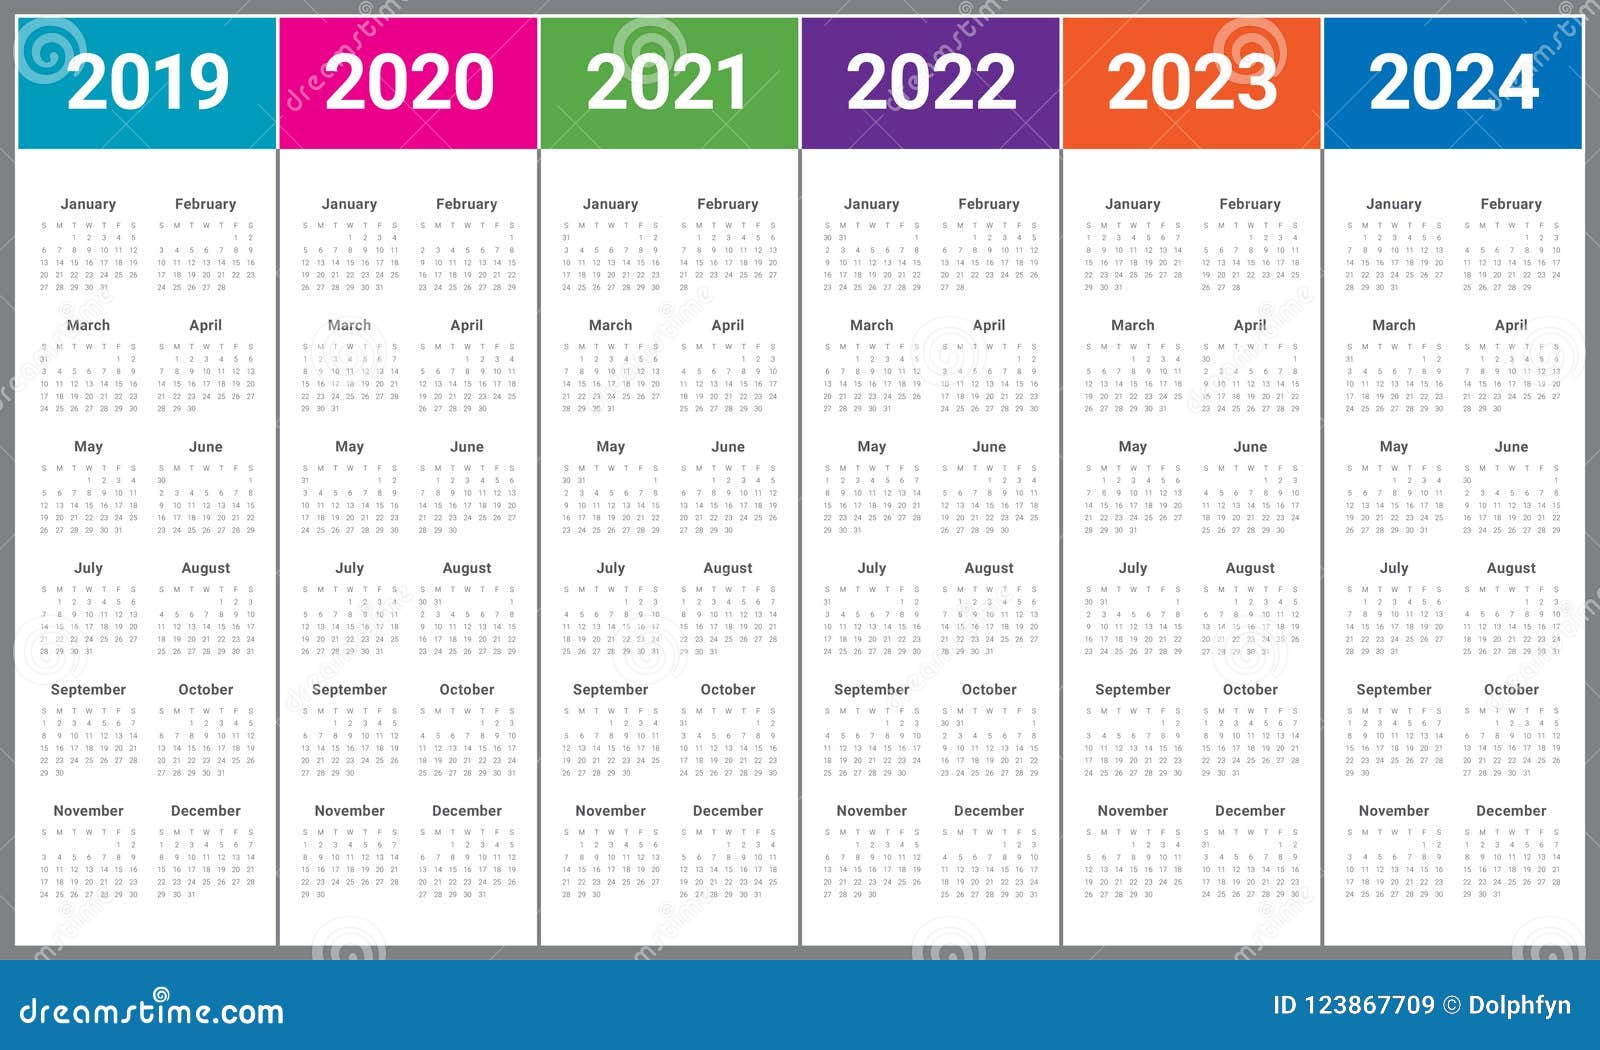 Сколько недель осталось до мая 2024 года. Календарь 2022 2023 2024 2025 года. Print 2020 2021 2022 2023. Календарь 2018 2019 2020 2021 2022. Календари 2020, 2021 и 2022 годов.